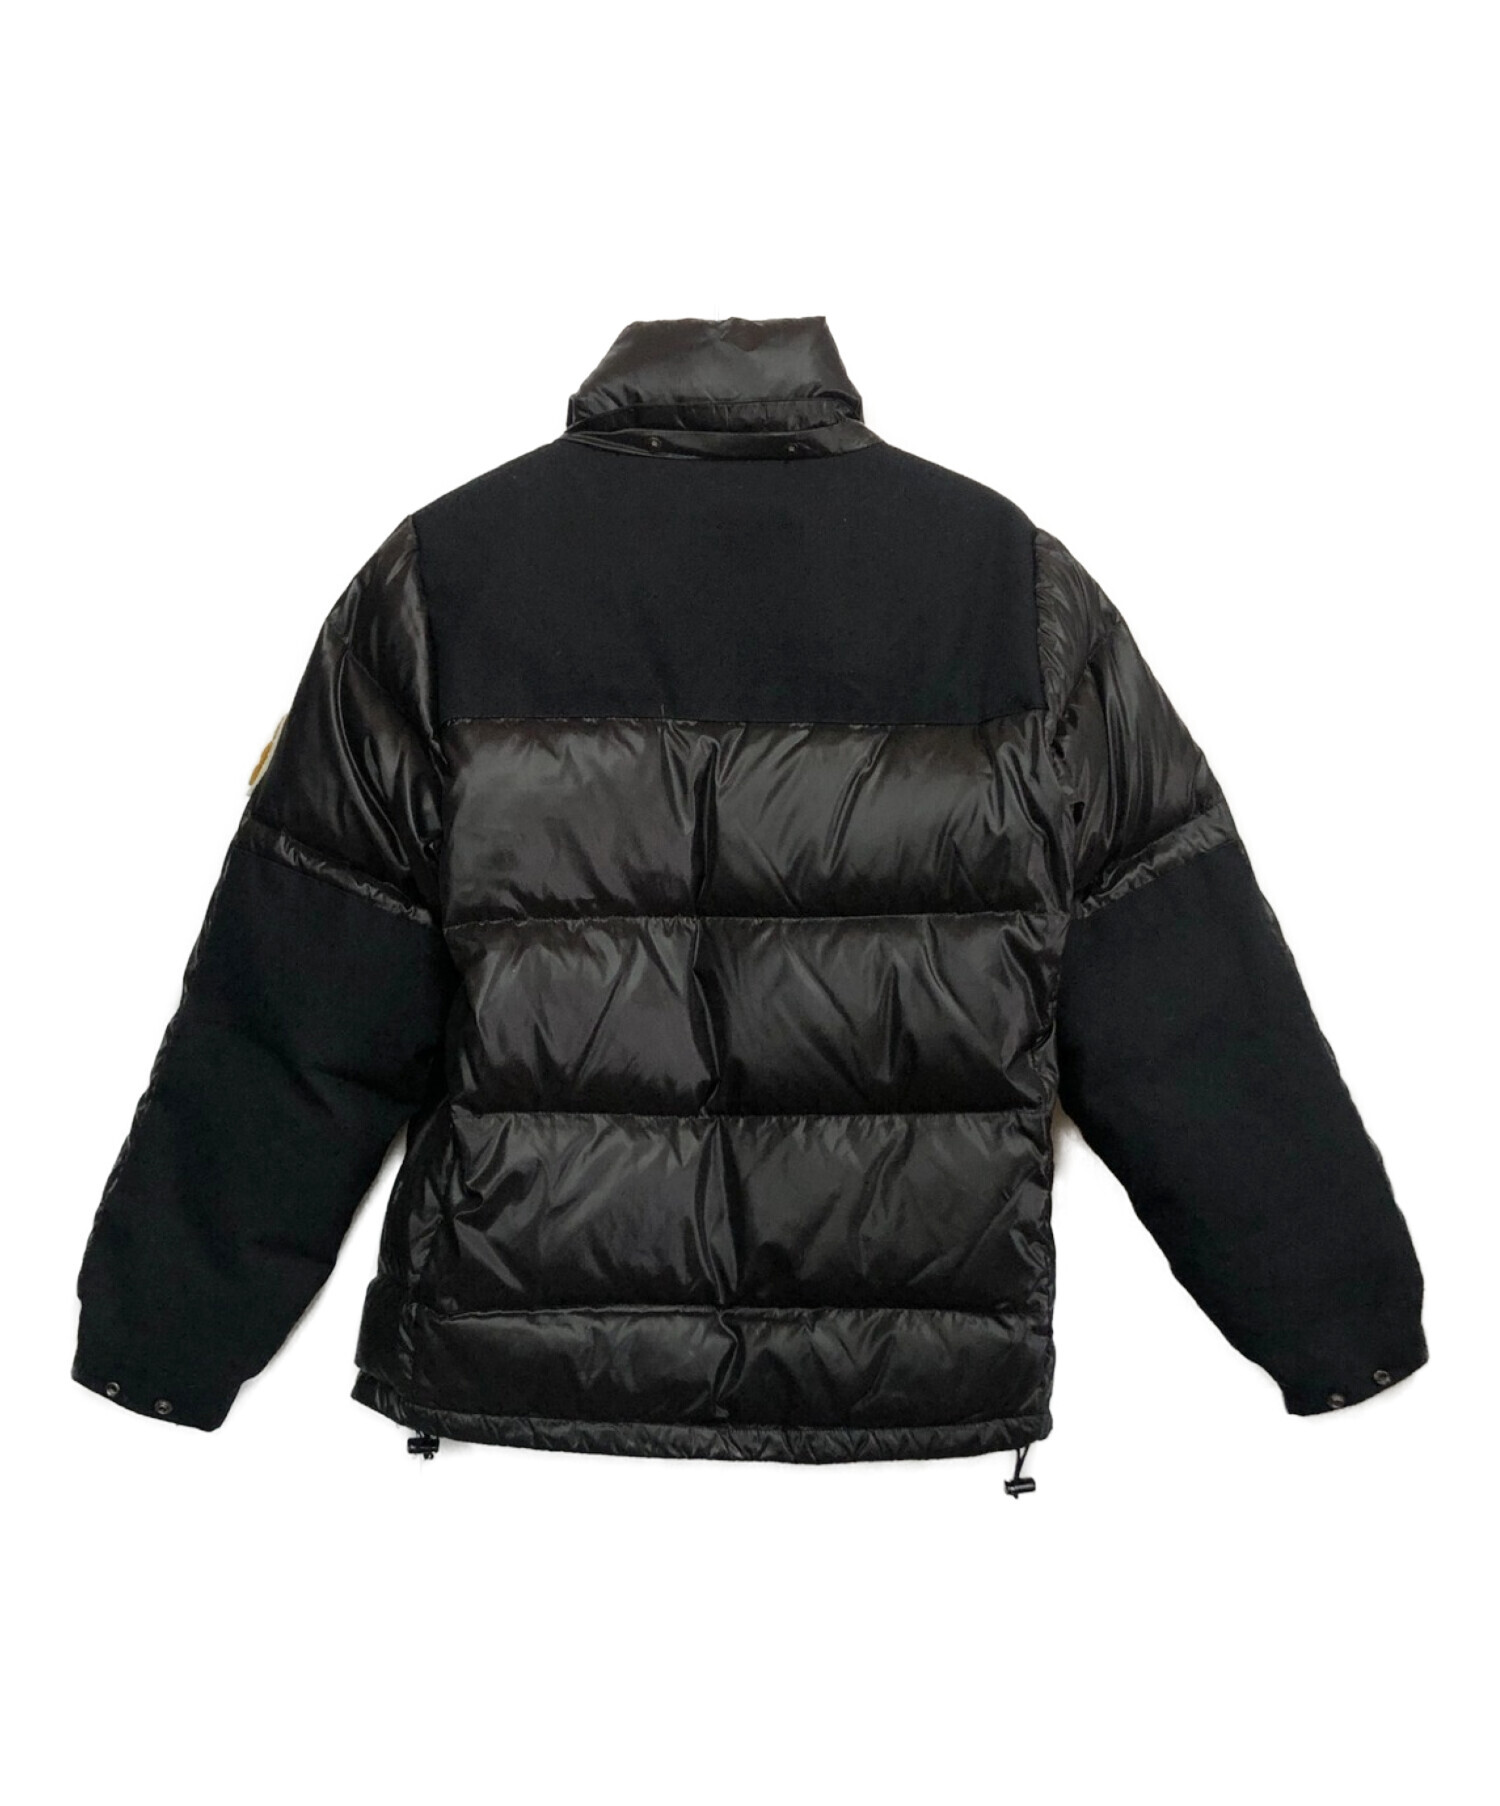 CarHartt (カーハート) ダウンジャケット ブラック サイズ:L